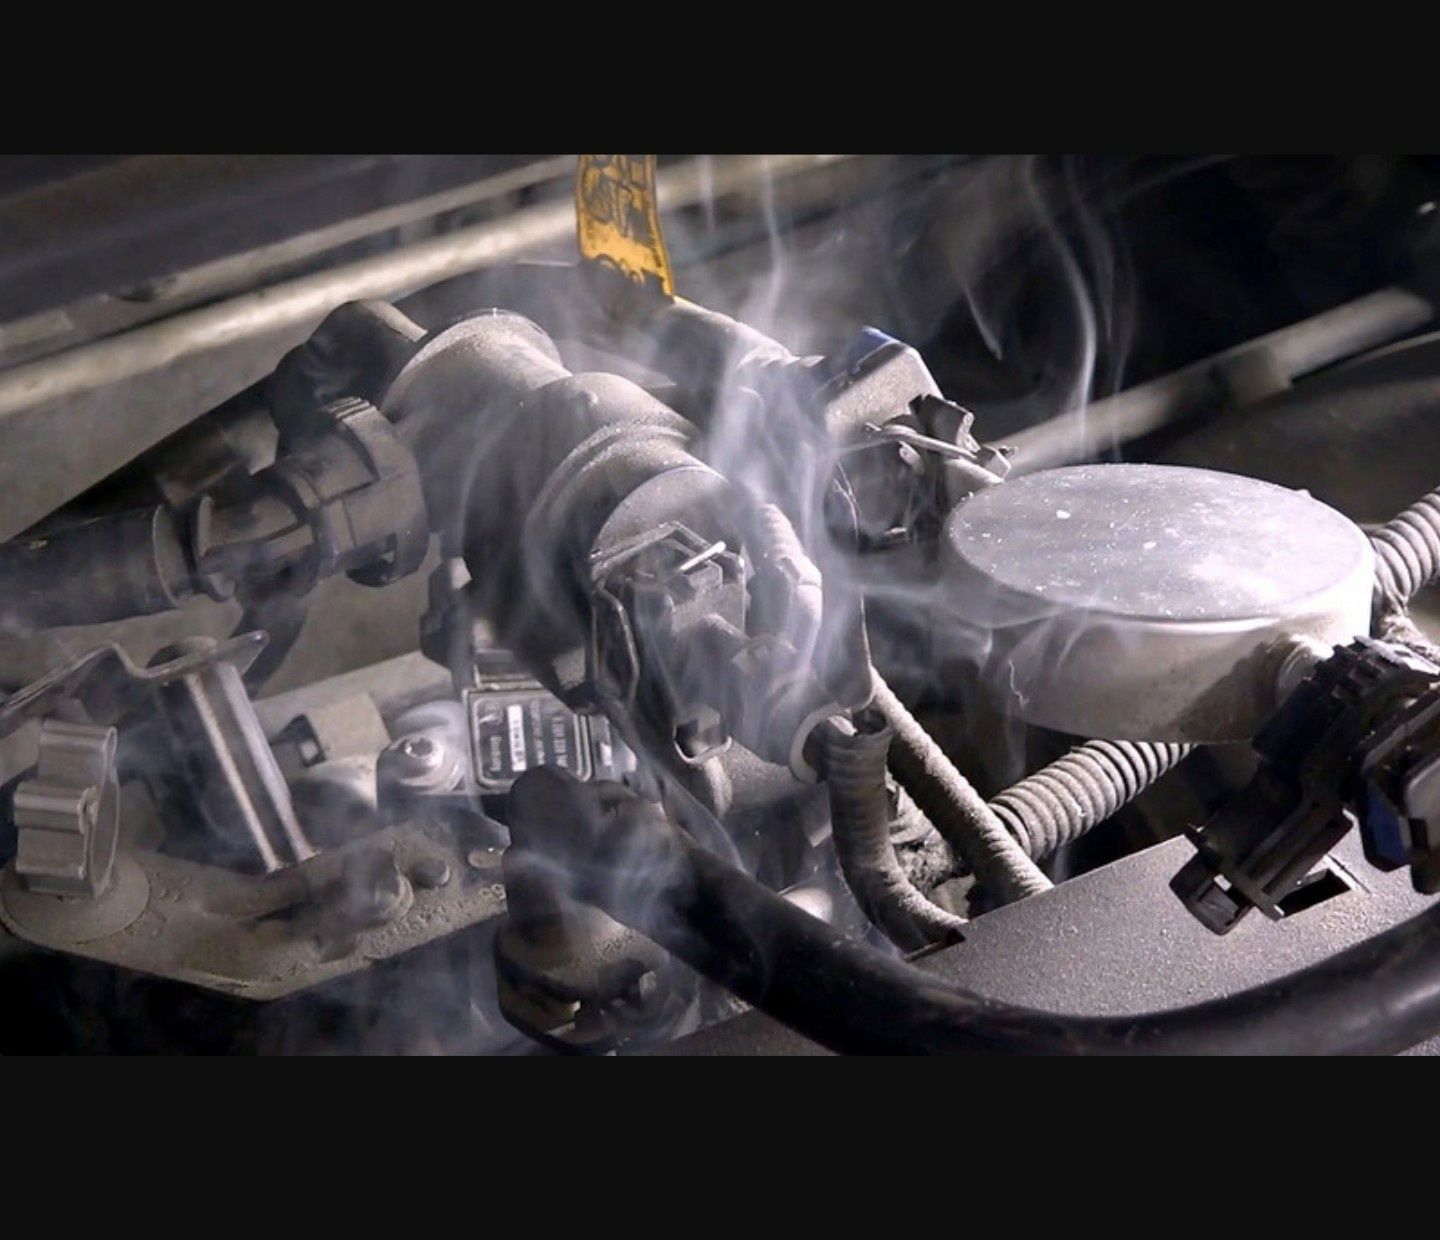 Двигатель всасывает воздух. Подсос воздуха. Подсос воздуха авто. Подсос воздуха дымогенератором. Выявление подсоса воздуха дымогенератором.